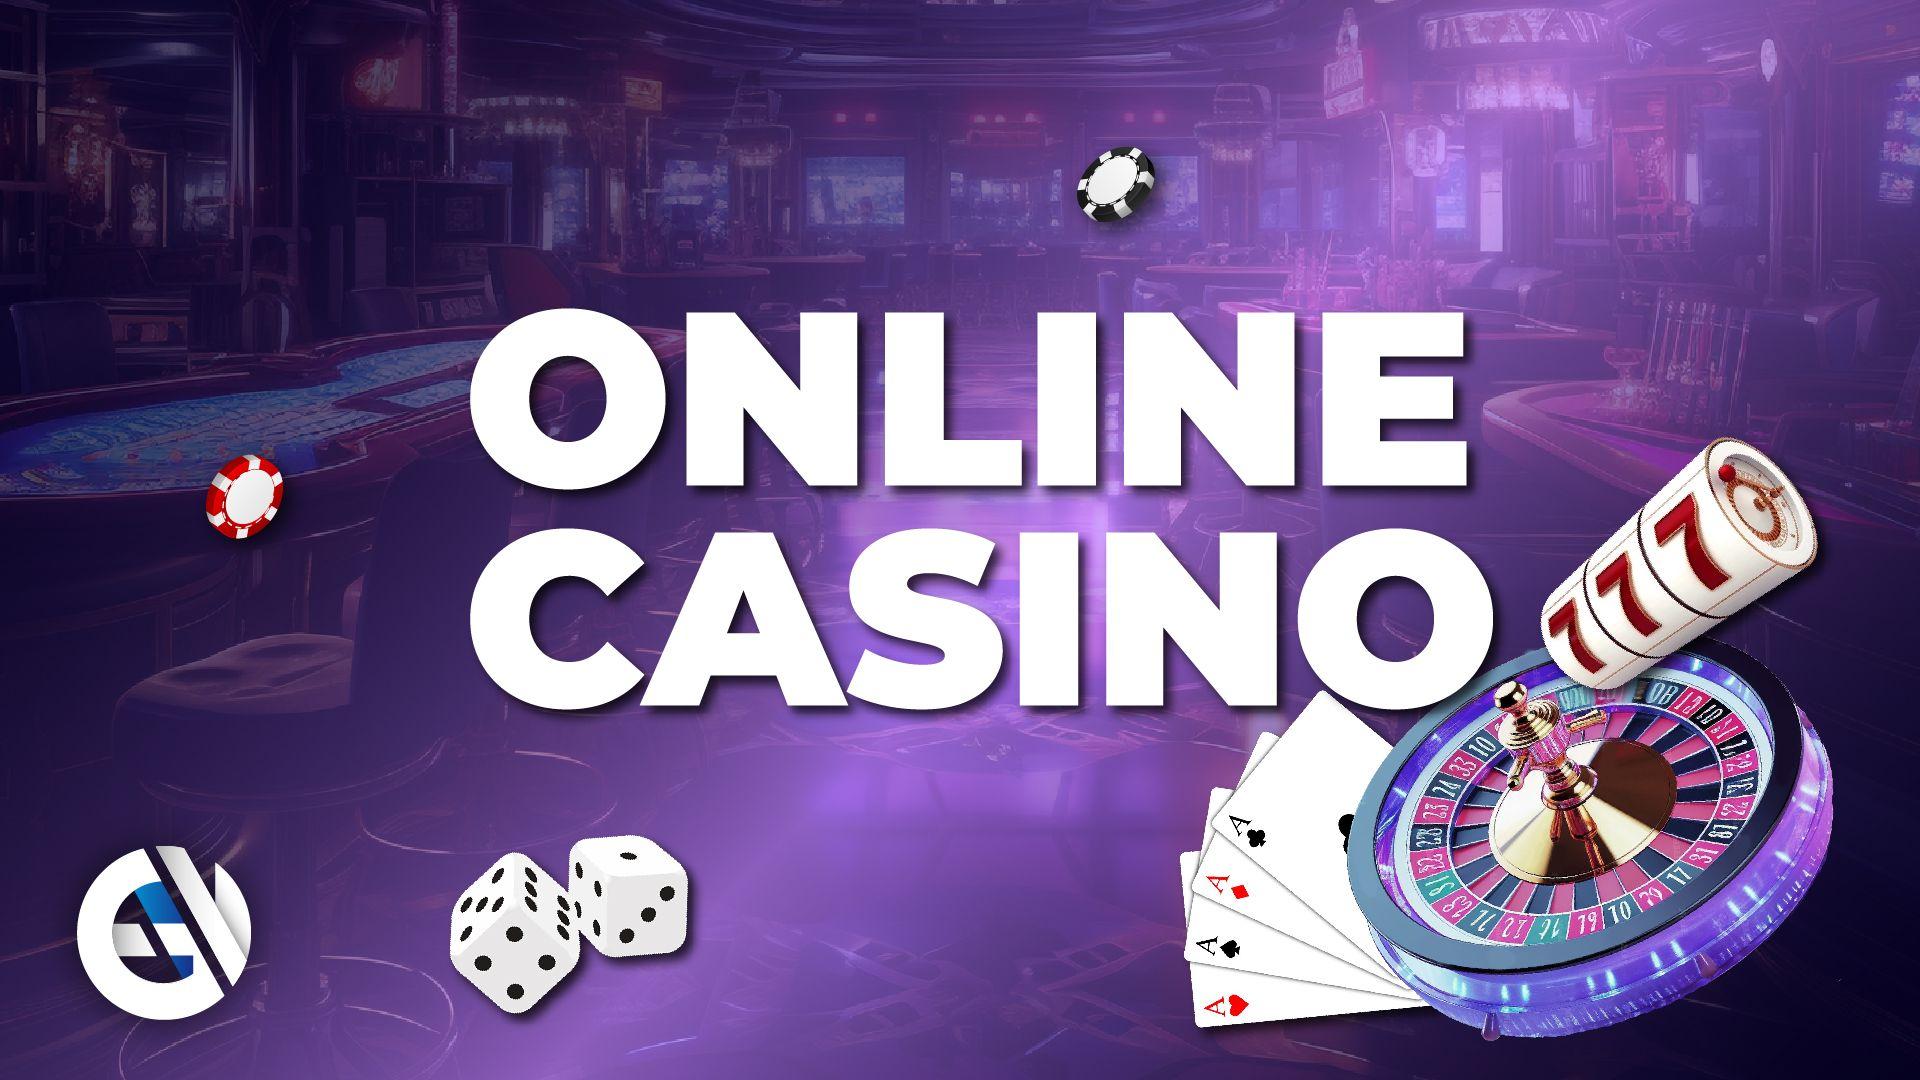 Этические принципы поведения в онлайн-казино - это "негласные правила"